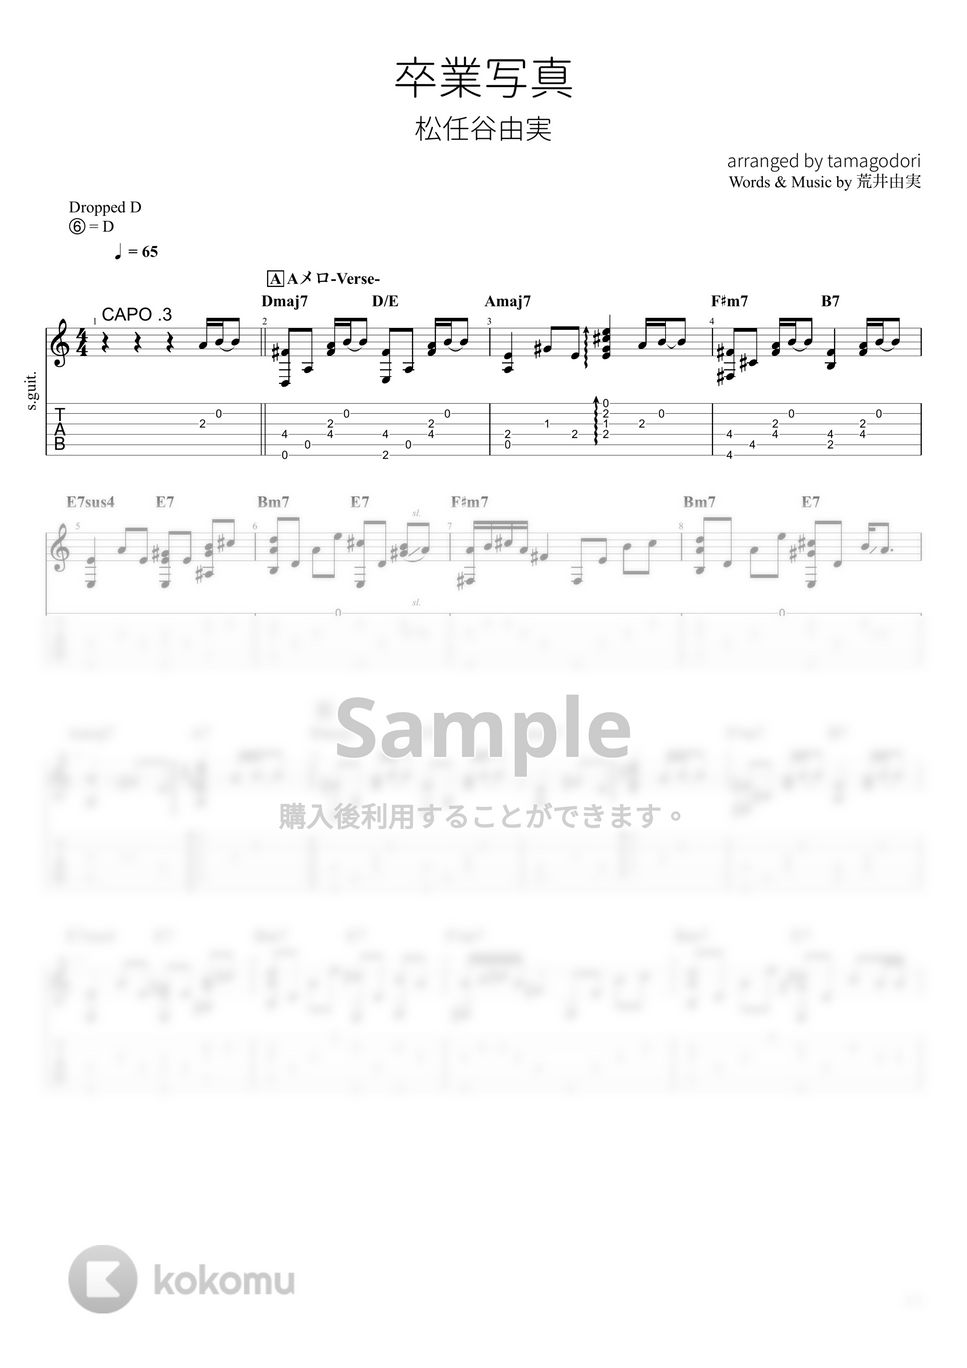 松任谷由実 - 卒業写真 (ソロギター) by たまごどり